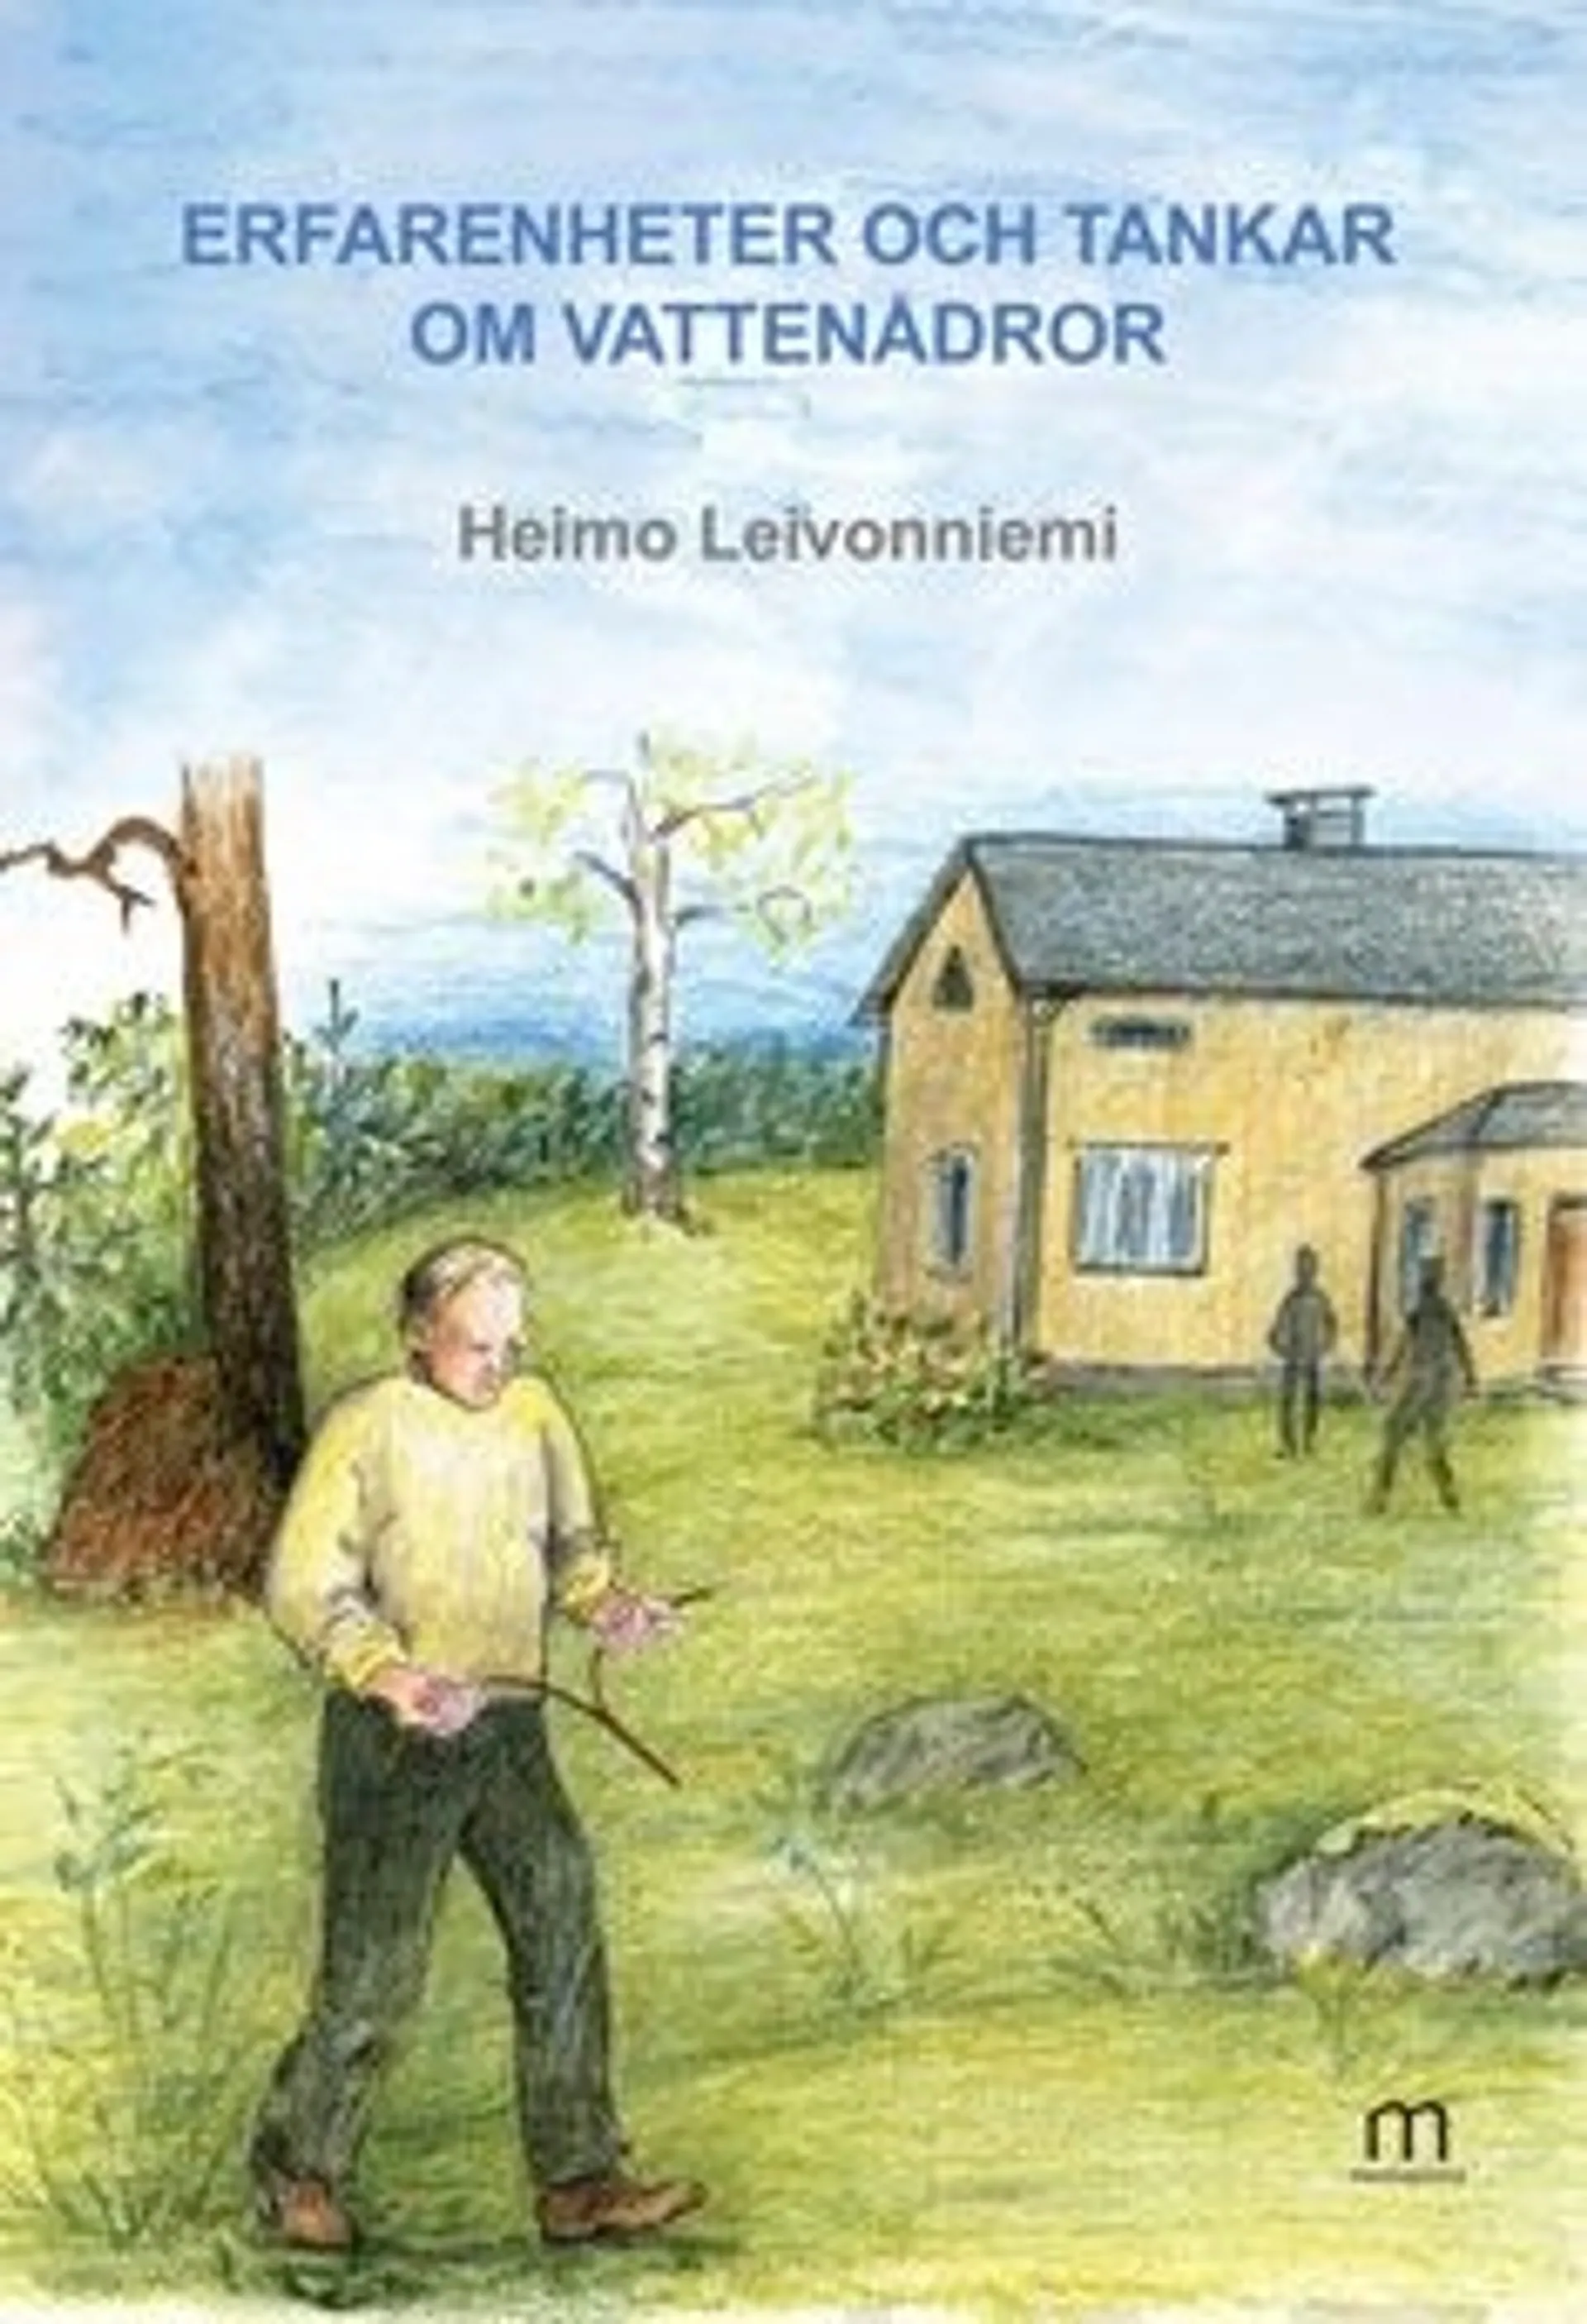 Leivonniemi, Erfarenheter och tankar om vattenådror